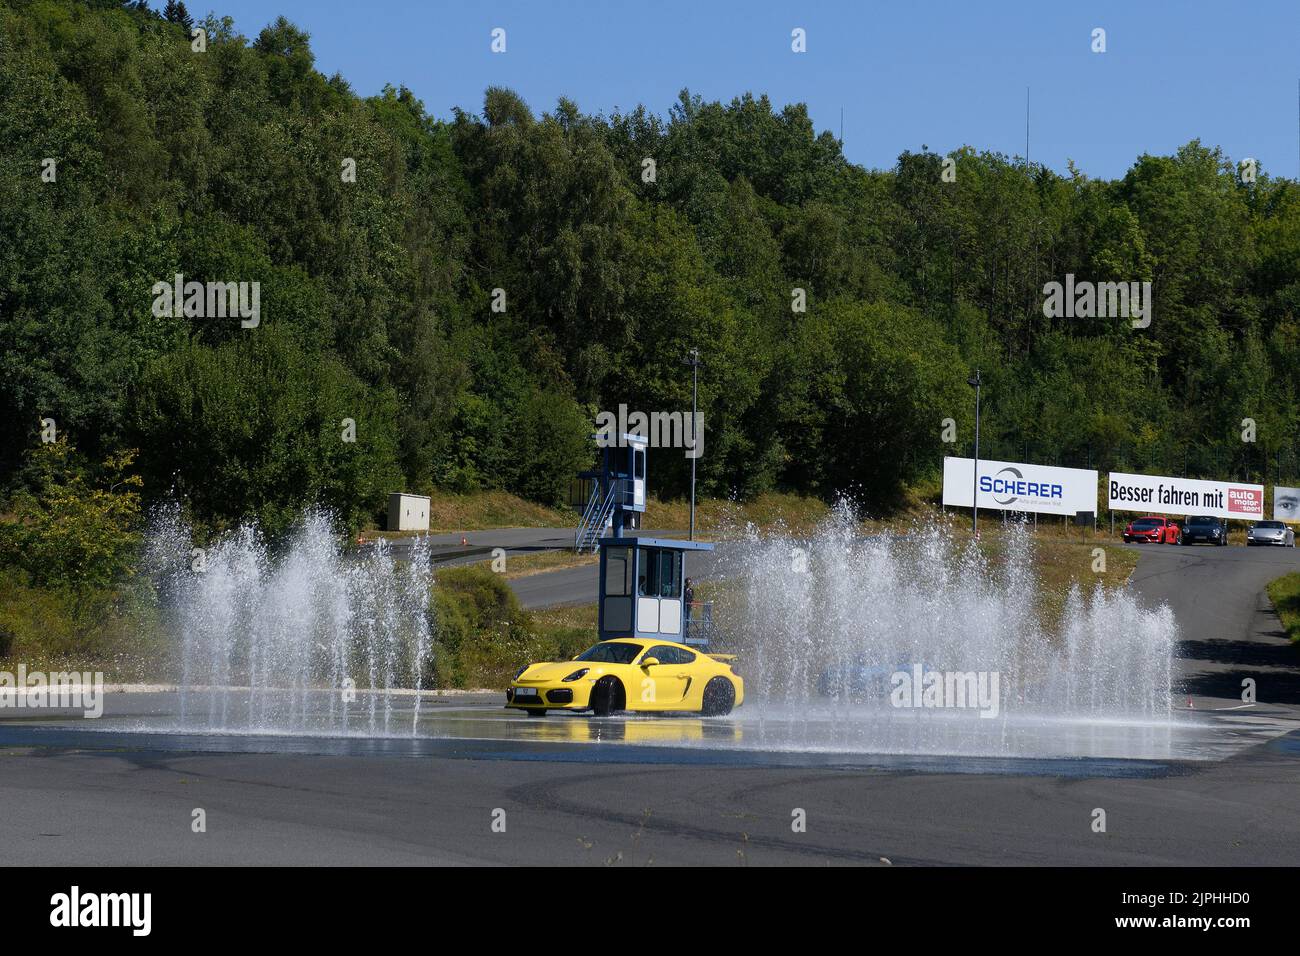 Porsche Cayman GT4 bei Fahrsicherheitstraining, links rechts Wasserfontäne, Fahrsicherheitszentrum, Nürburgring, Rheinland-Pfalz, Deutschland, EU Stock Photo